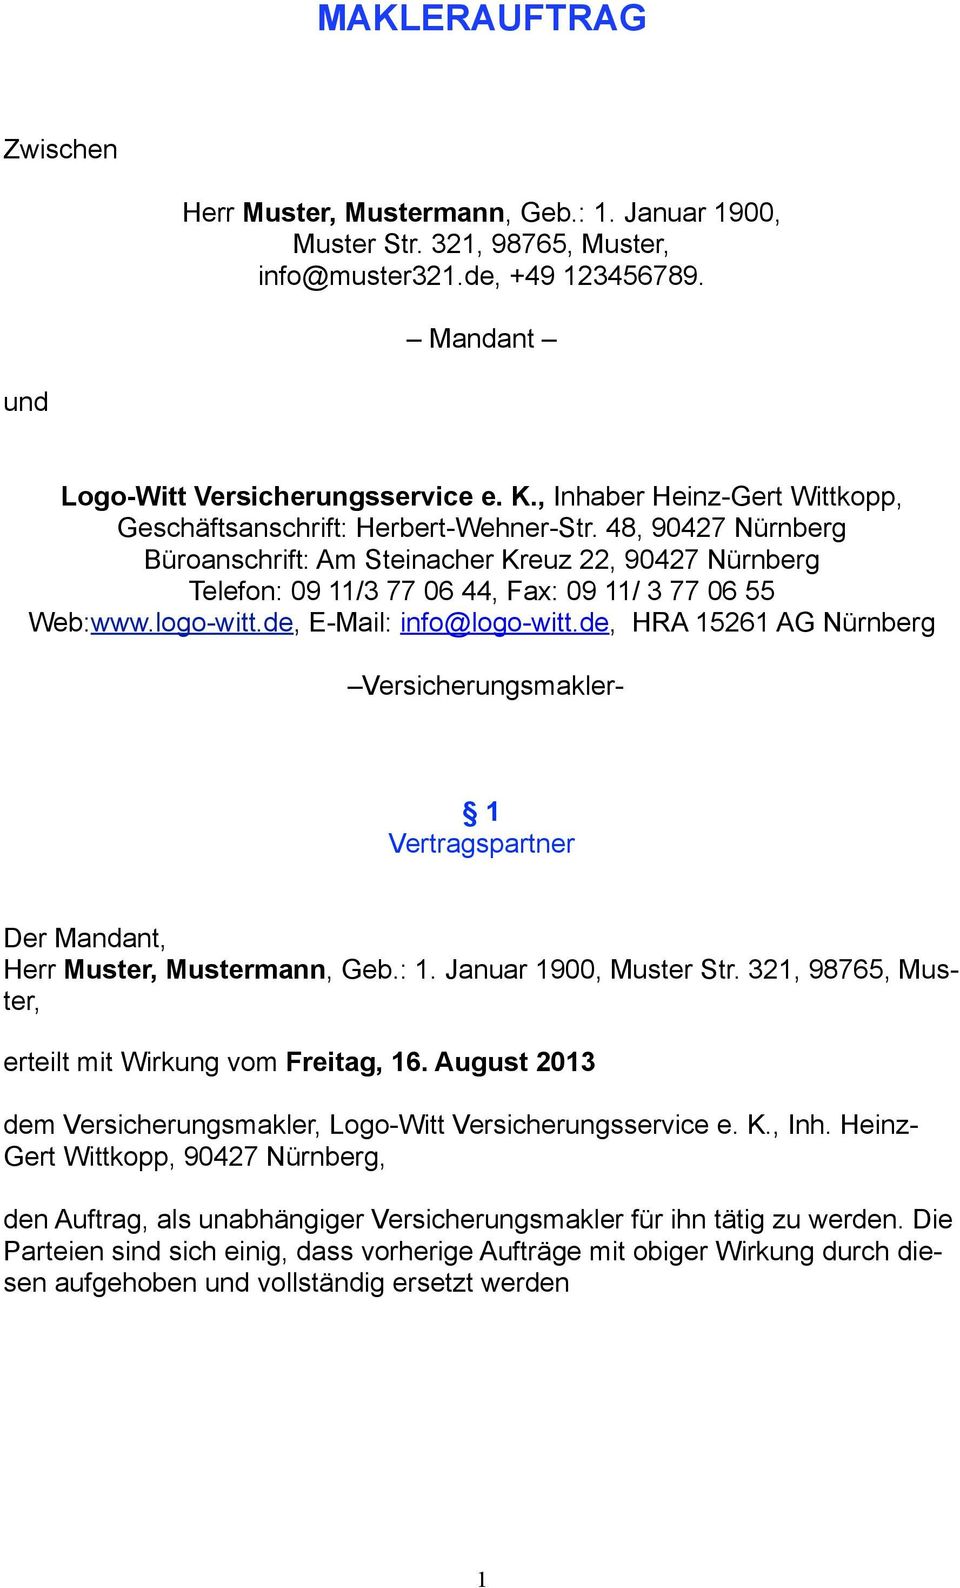 48, 90427 Nürnberg Büroanschrift: Am Steinacher Kreuz 22, 90427 Nürnberg Telefon: 09 11/3 77 06 44, Fax: 09 11/ 3 77 06 55 Web:www.logo-witt.de, E-Mail: info@logo-witt.